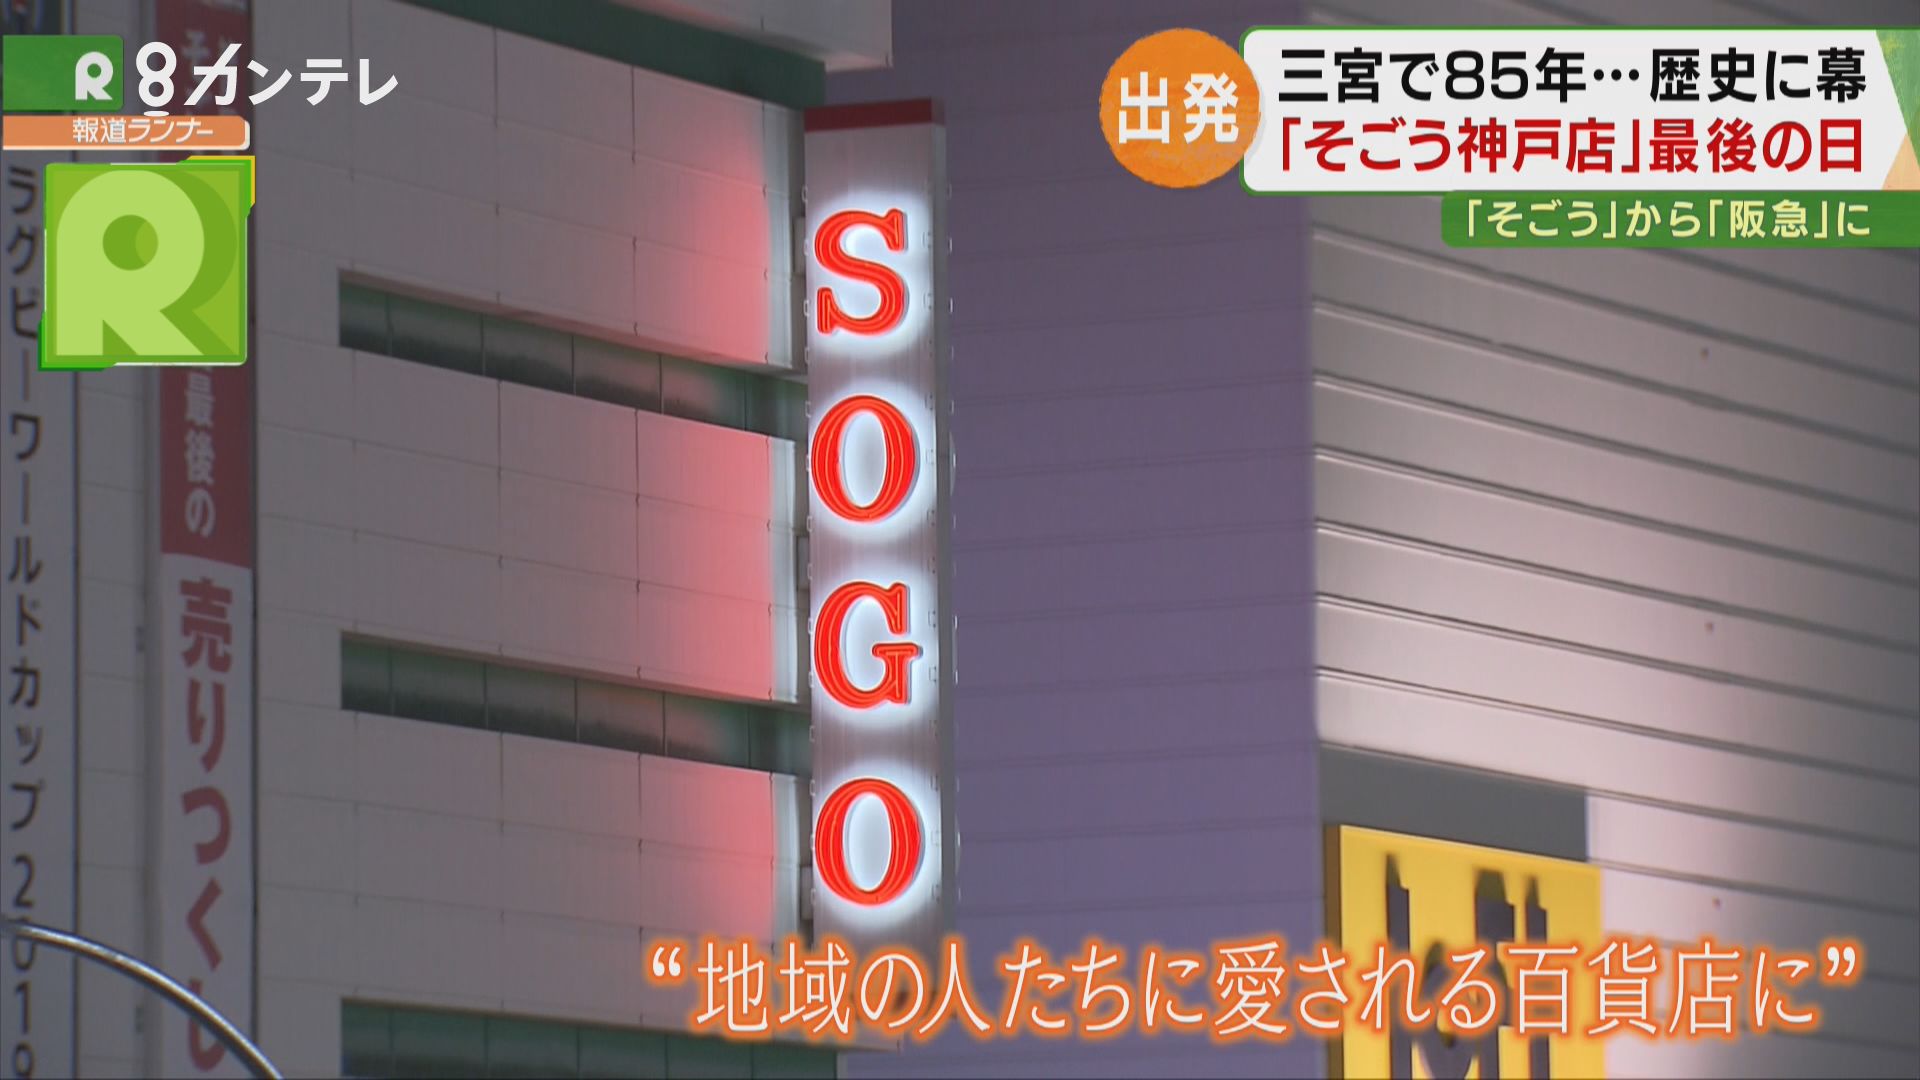 【特集】神戸・三宮のシンボルが「そごう」から「阪急」へ　85年の歴史に幕…そして新たな出発を迎えた舞台裏